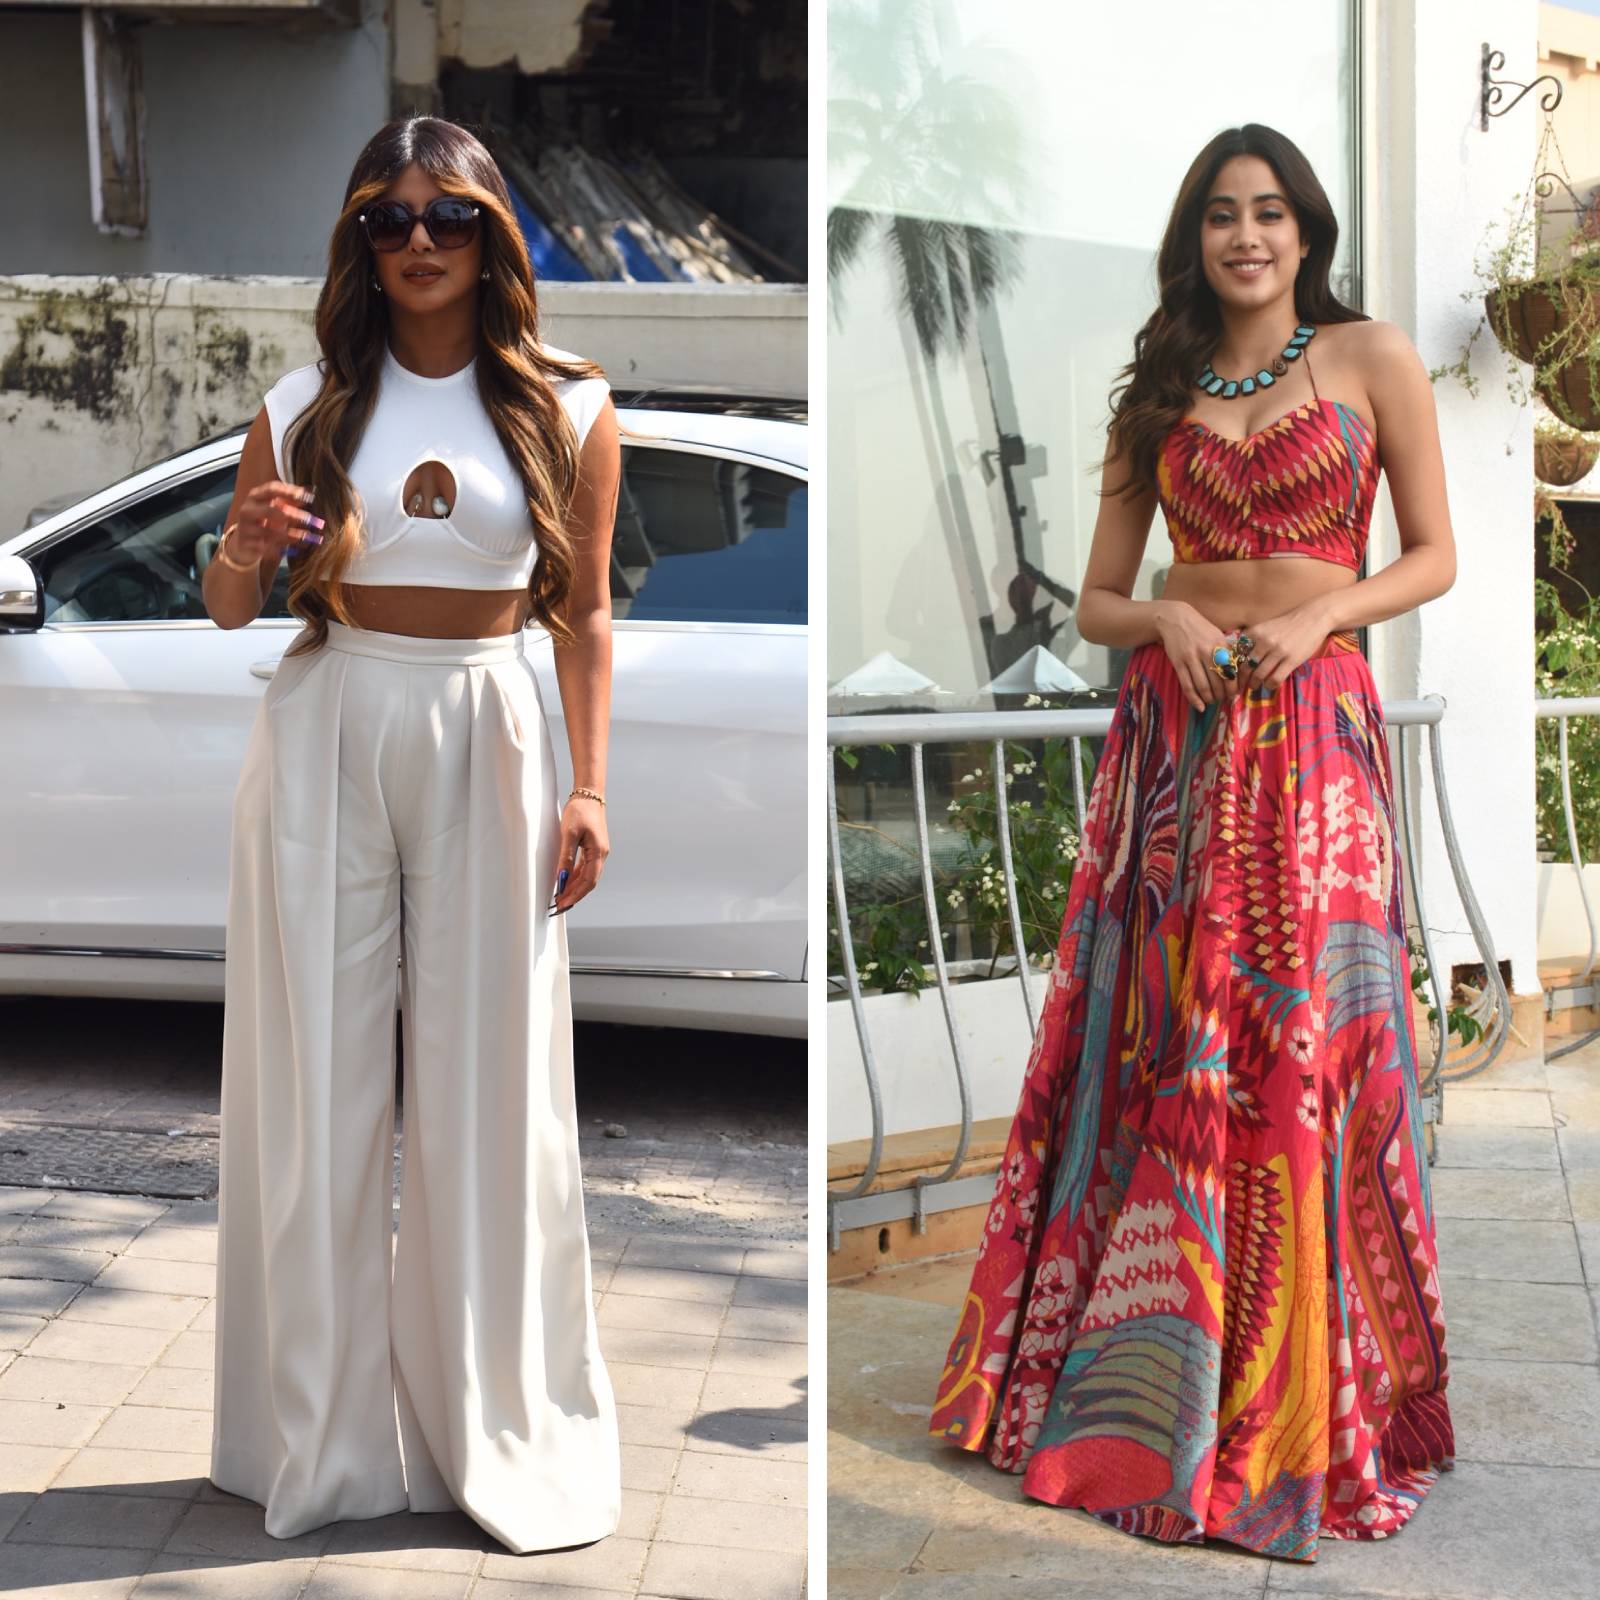 Best dressed this week: Janhvi Kapoor and Priyanka Chopra